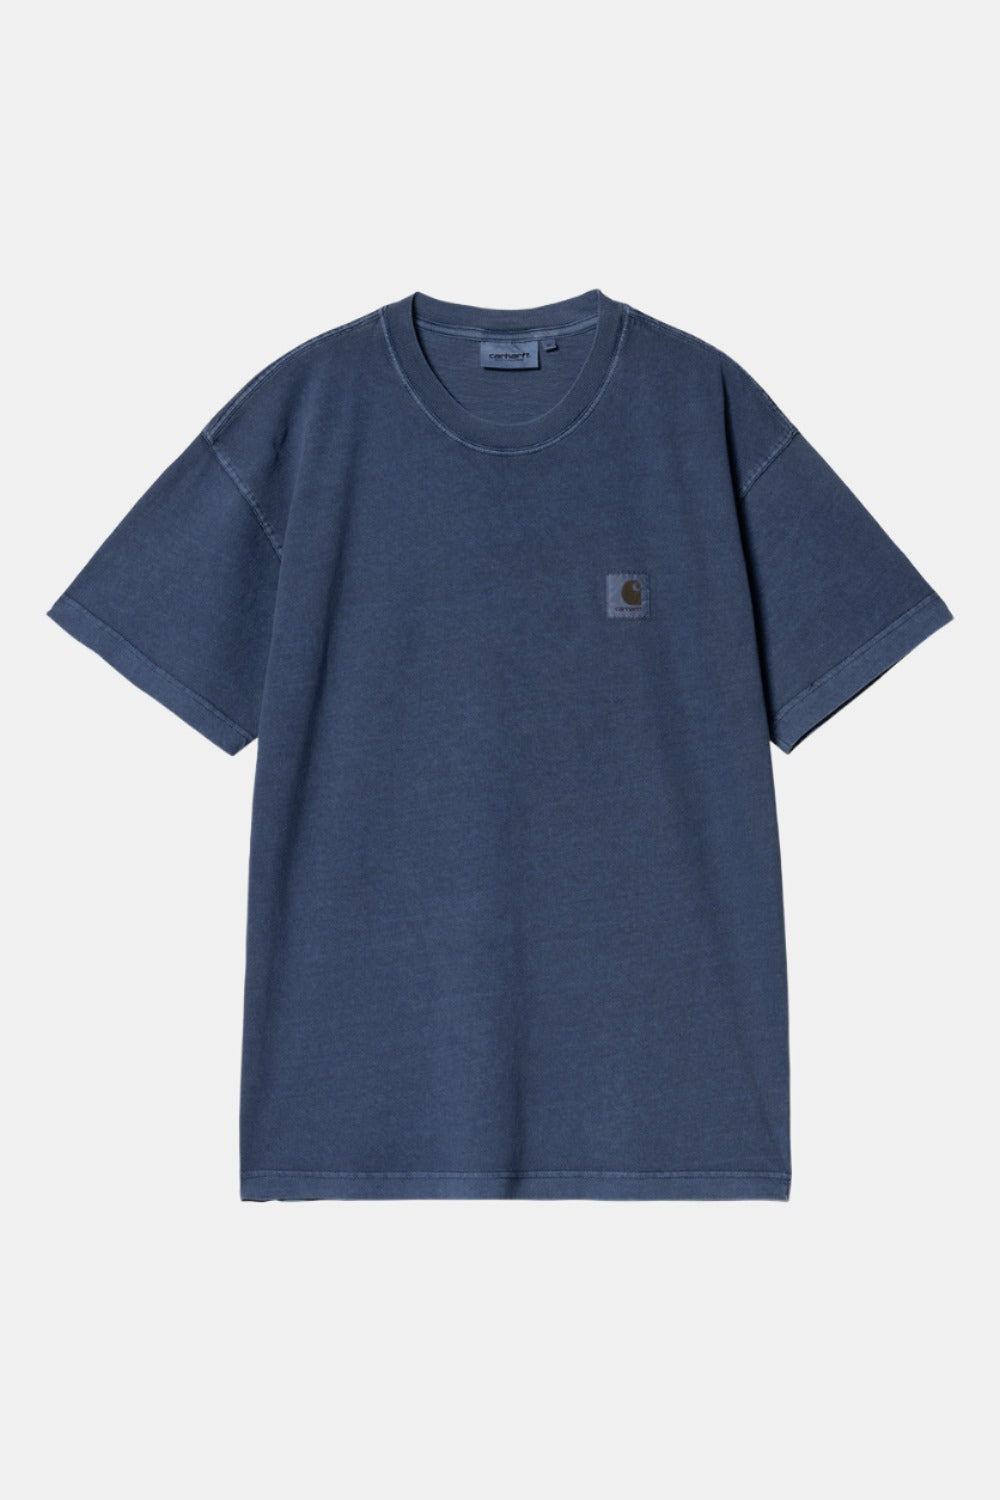 Carhartt WIP Short Sleeve Nelson T-Shirt (Elder)